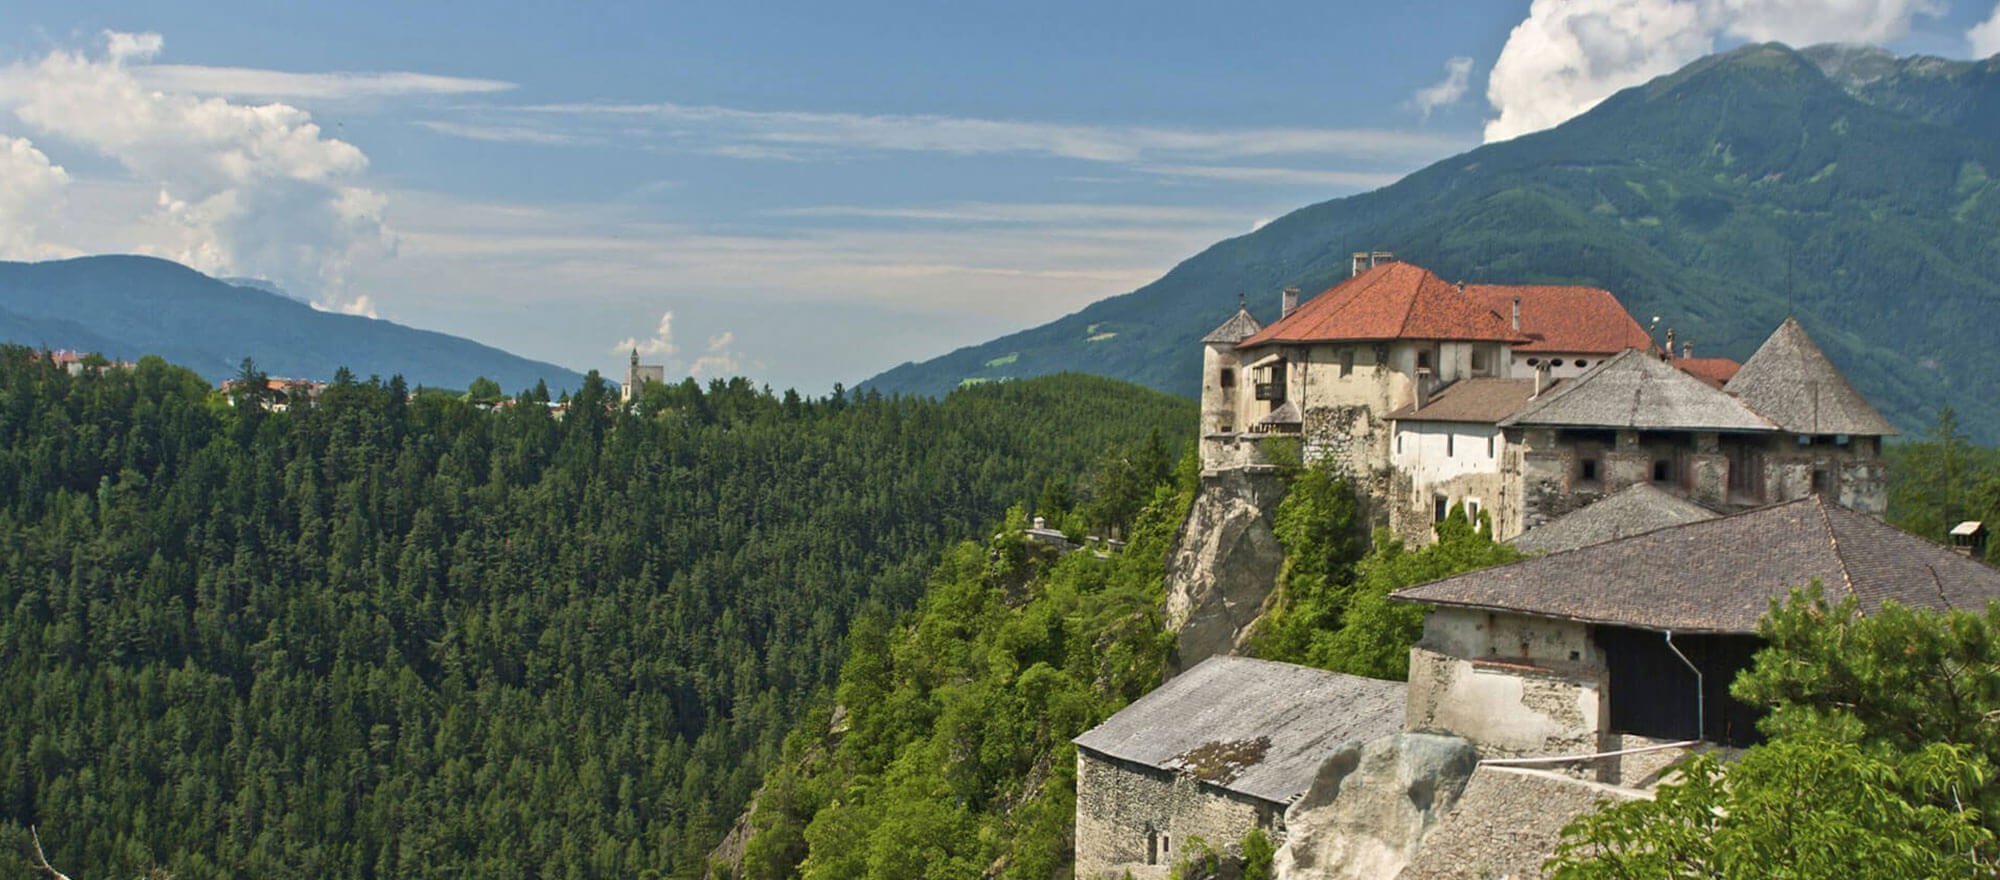 Castel Rodengo – Grazia in montagna